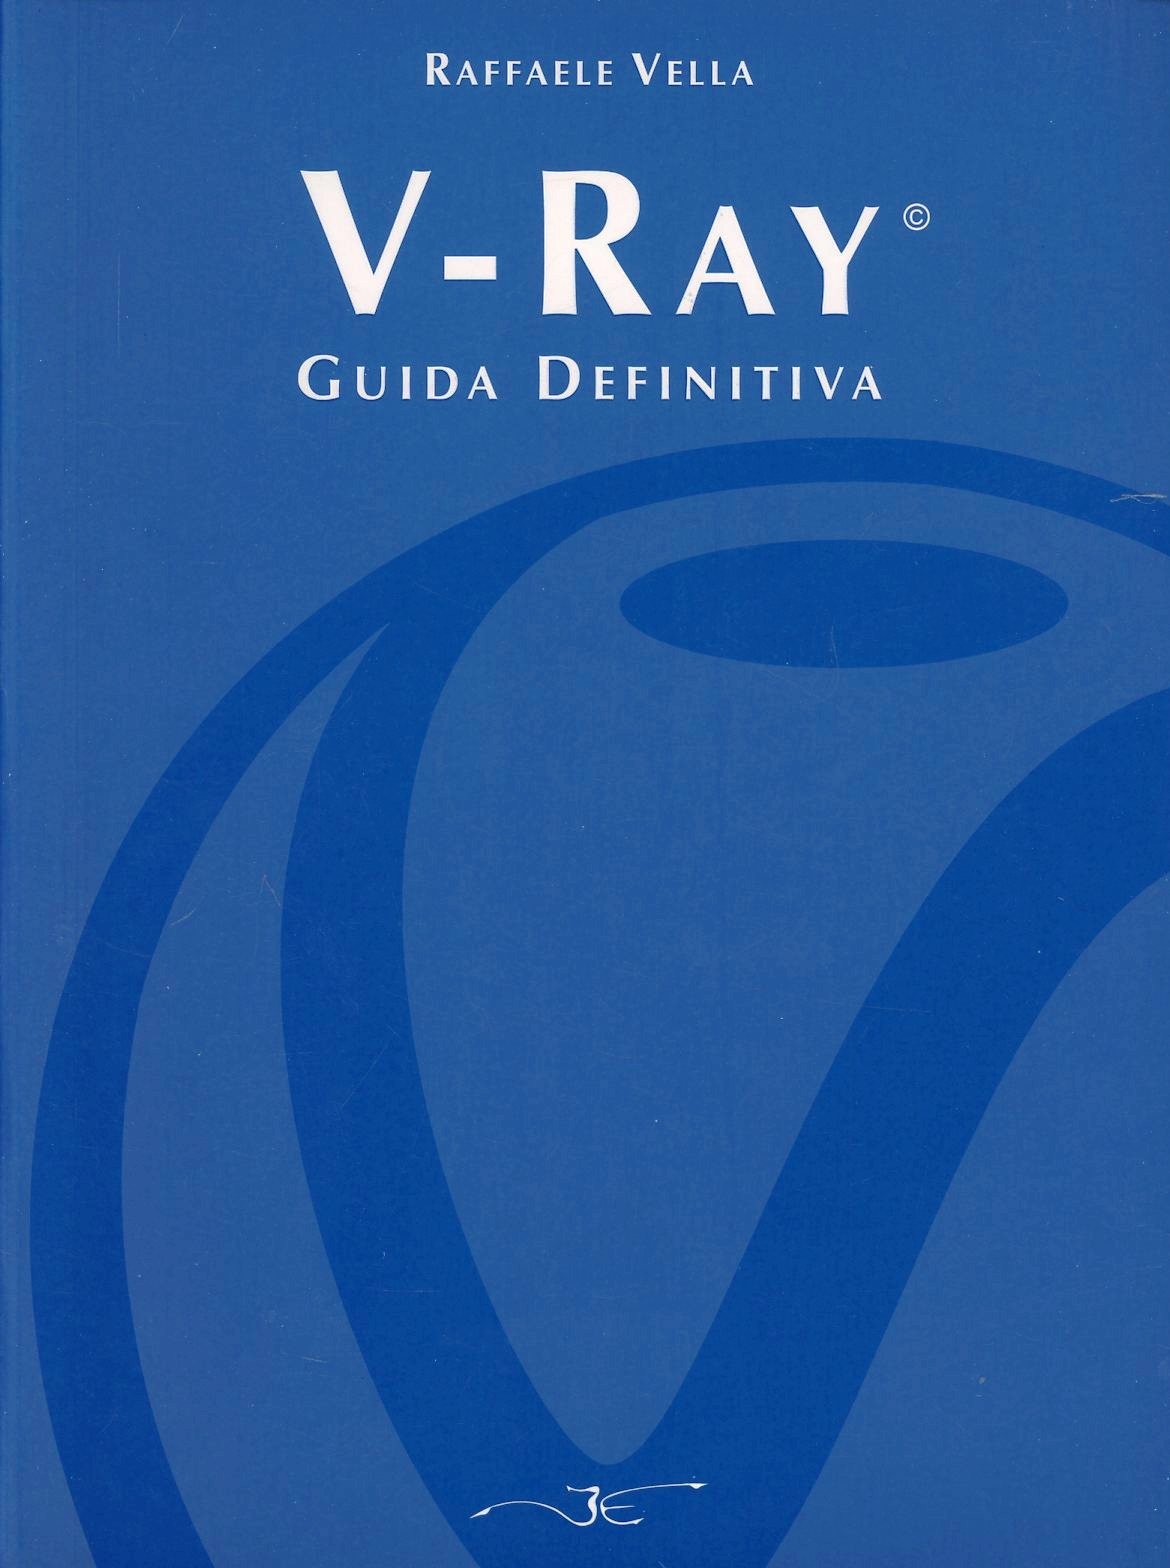 Libri Raffaele Vella - V-Ray. Guida Definitiva NUOVO SIGILLATO SUBITO DISPONIBILE